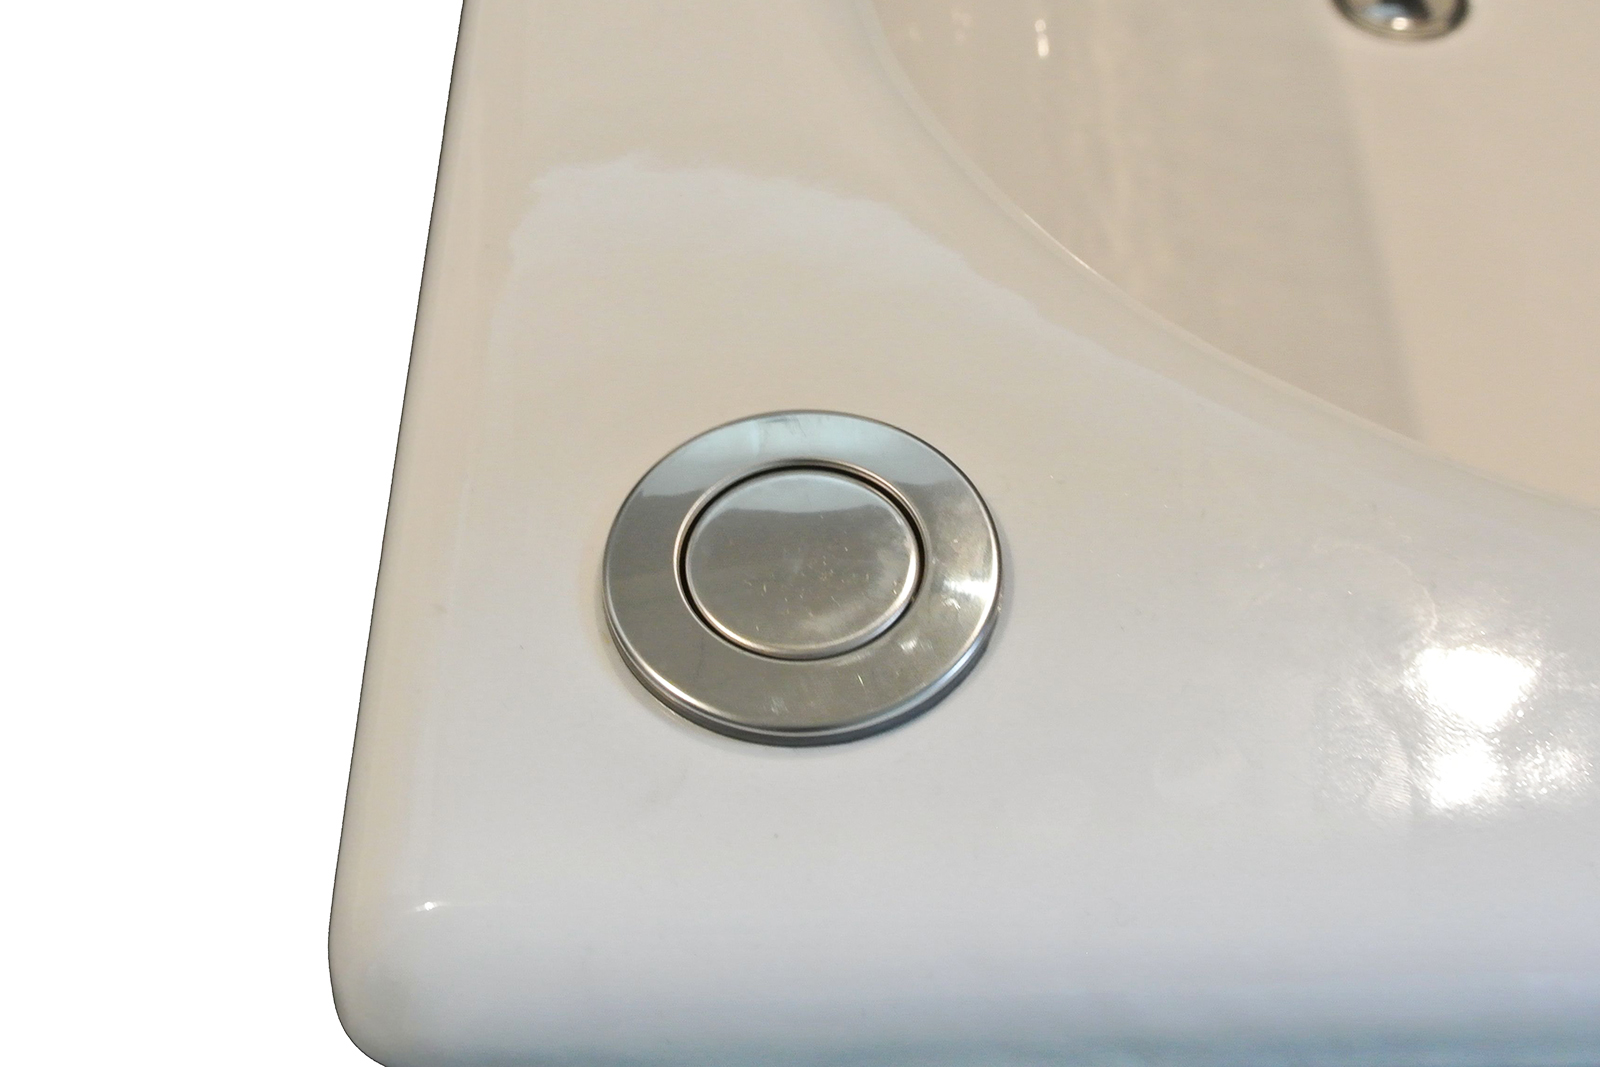 鋳物ホーロー浴槽 1470 スタンドタイプ KB-BT004-06-G122 ワンプッシュ排水栓。浴槽の設置位置によって「左向き」か「右向き」かをご選択ください